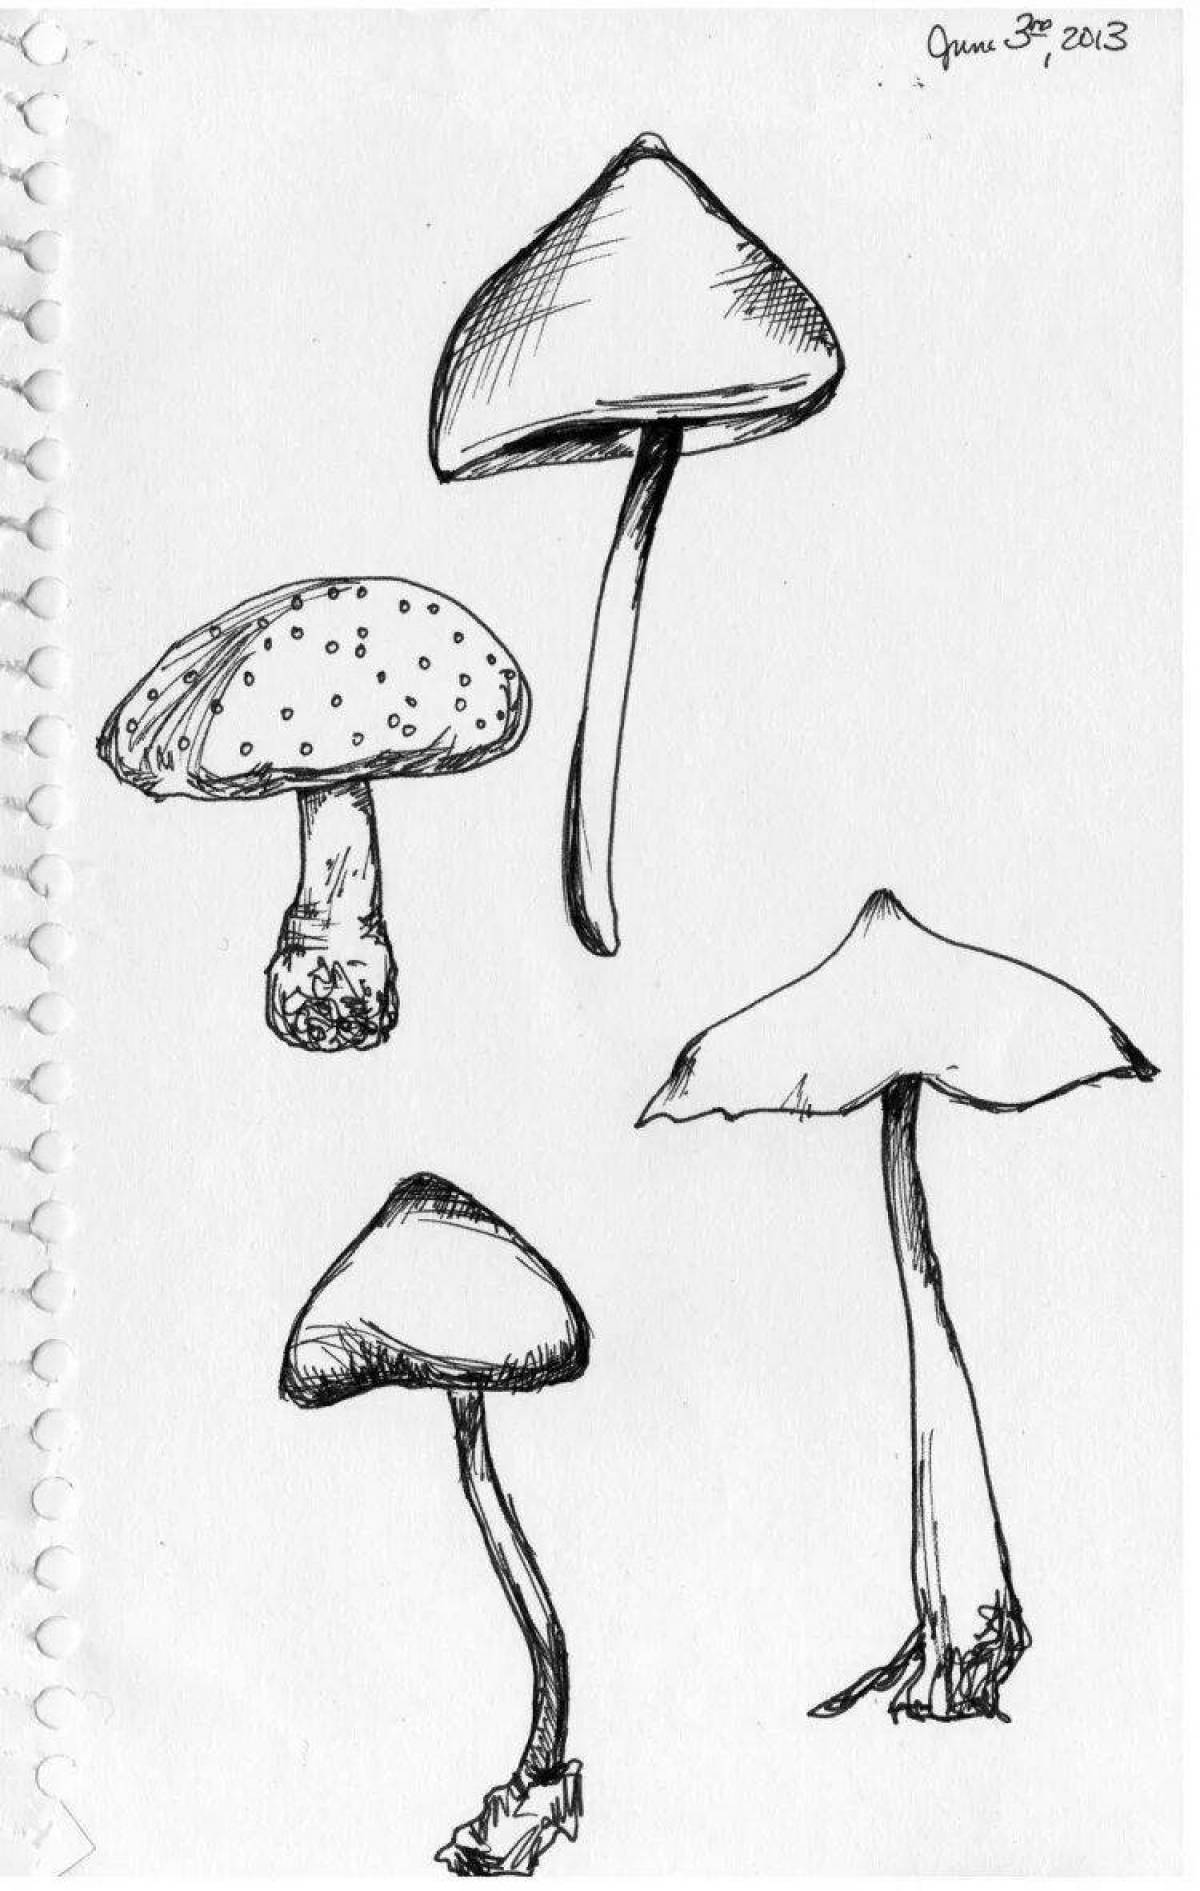 Exquisite toadstool mushrooms